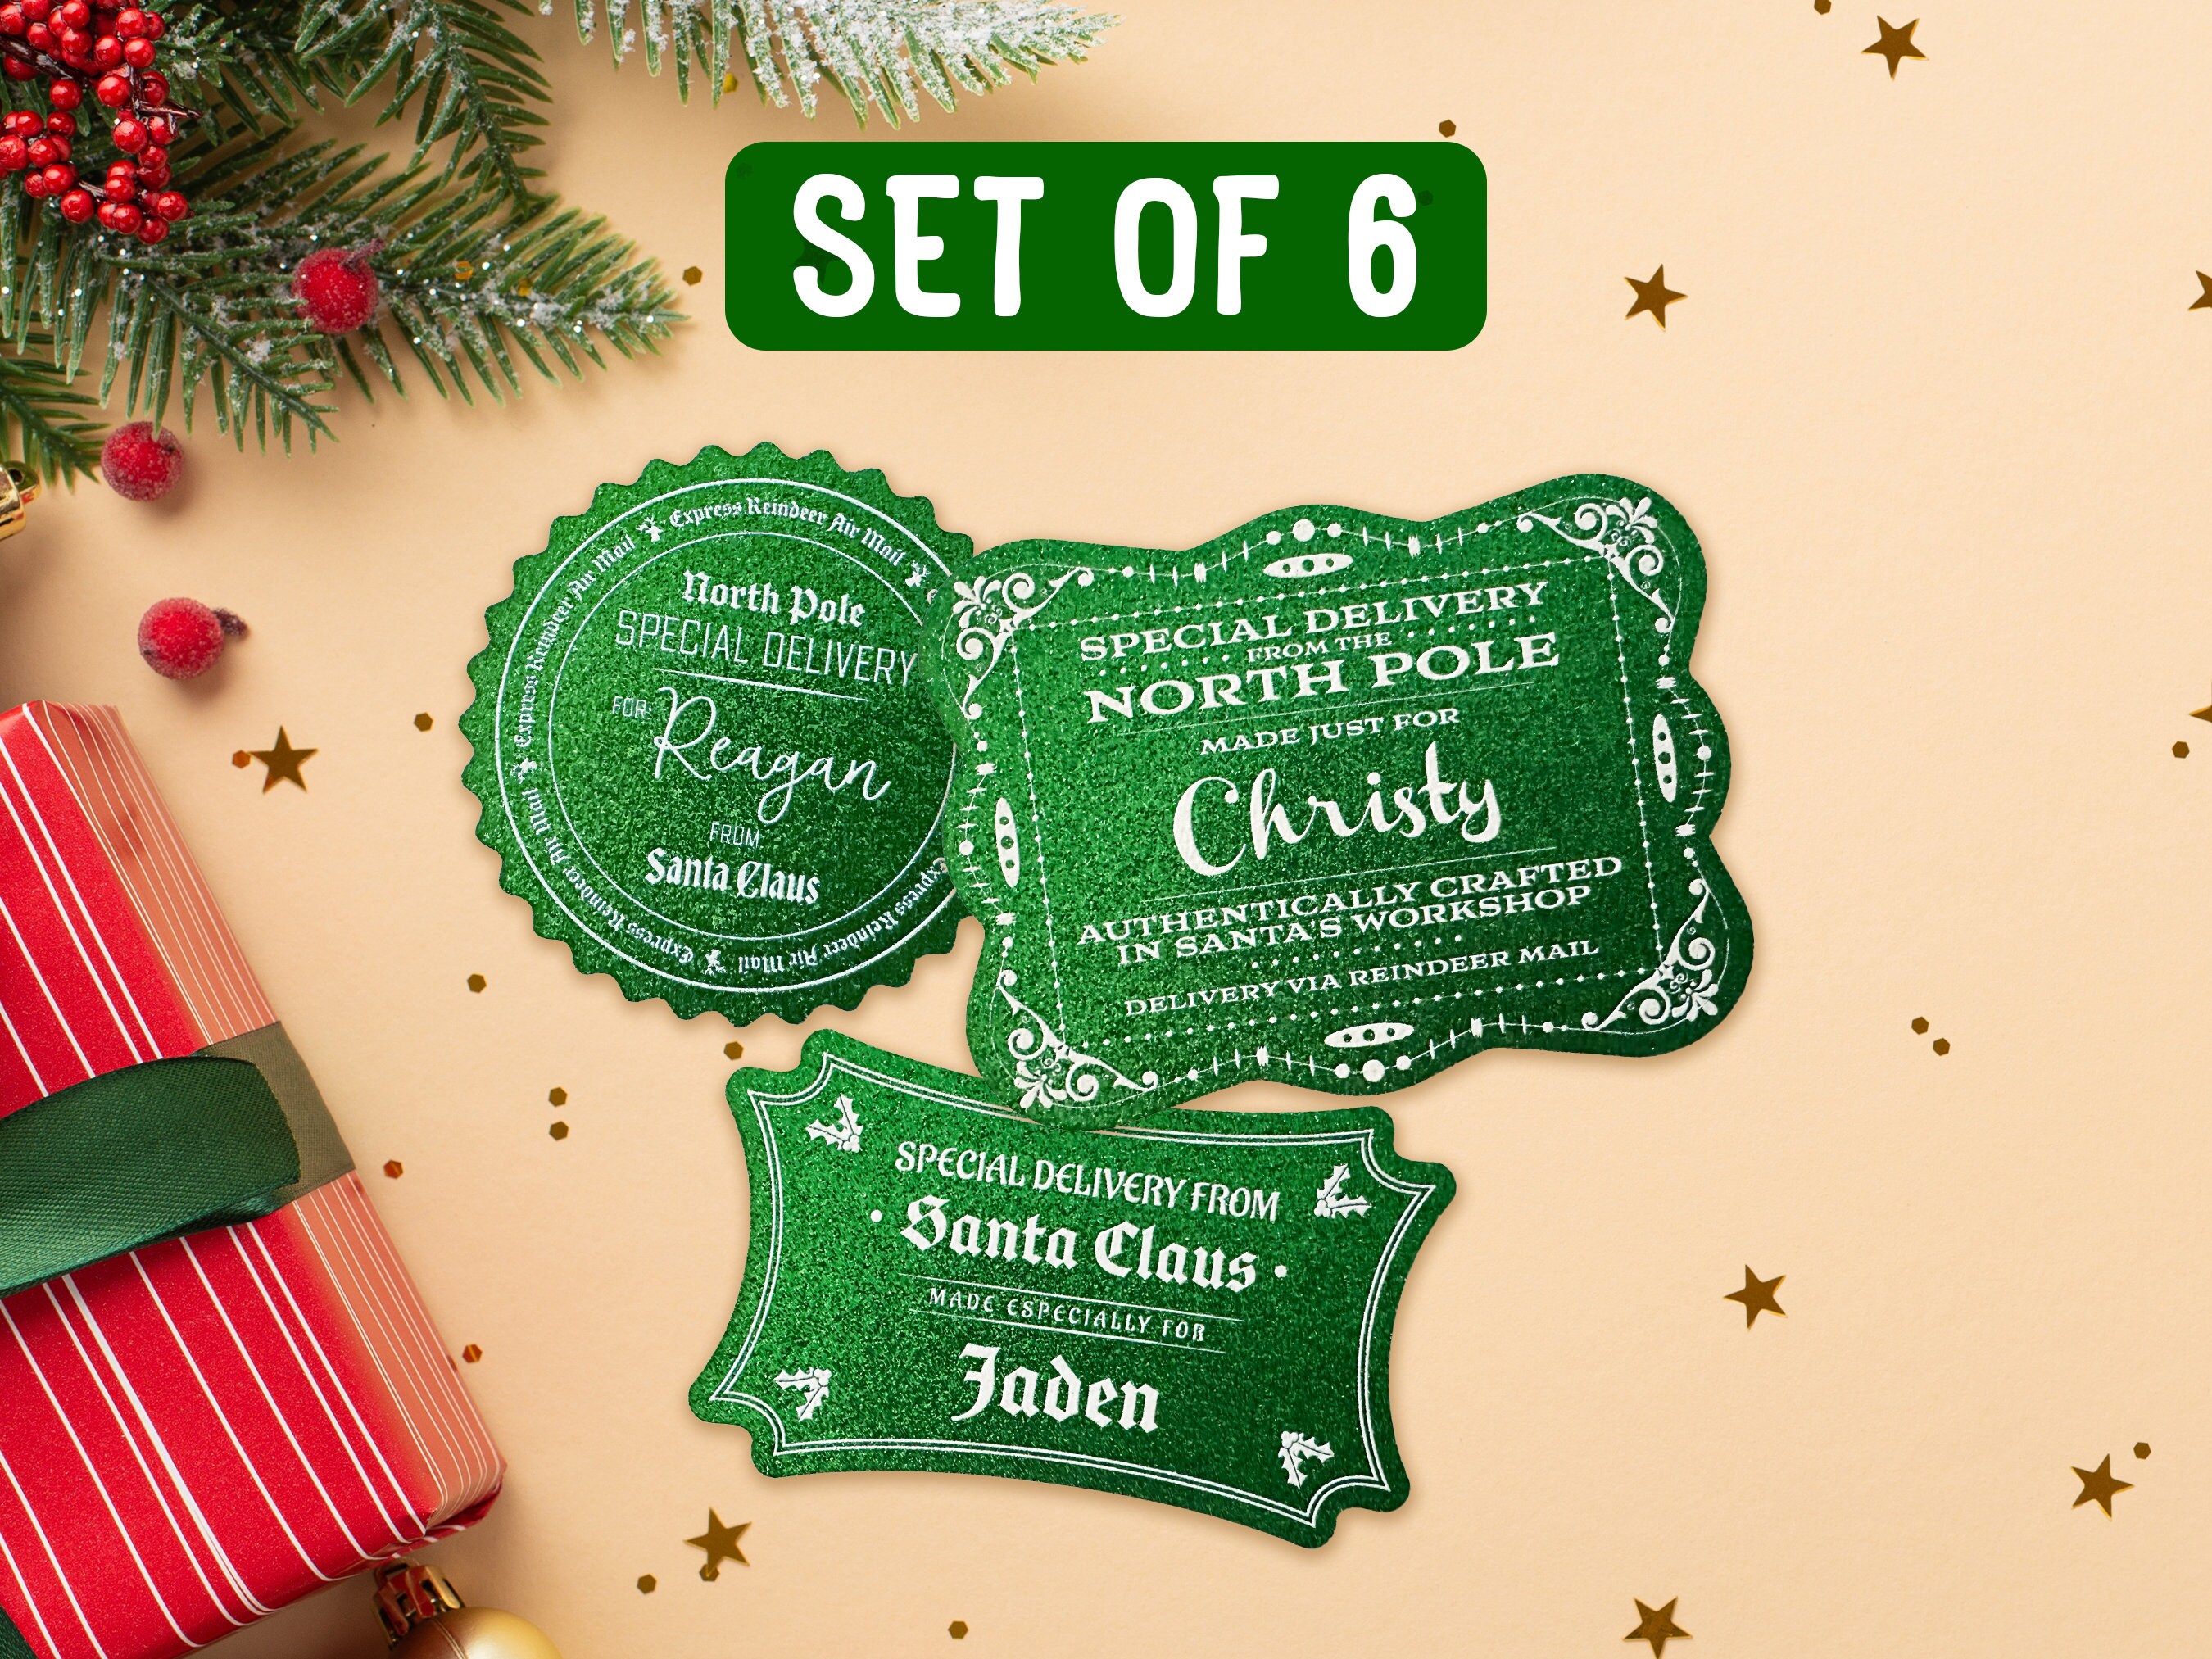 Free Christmas printable gift tags - Green WIth Decor